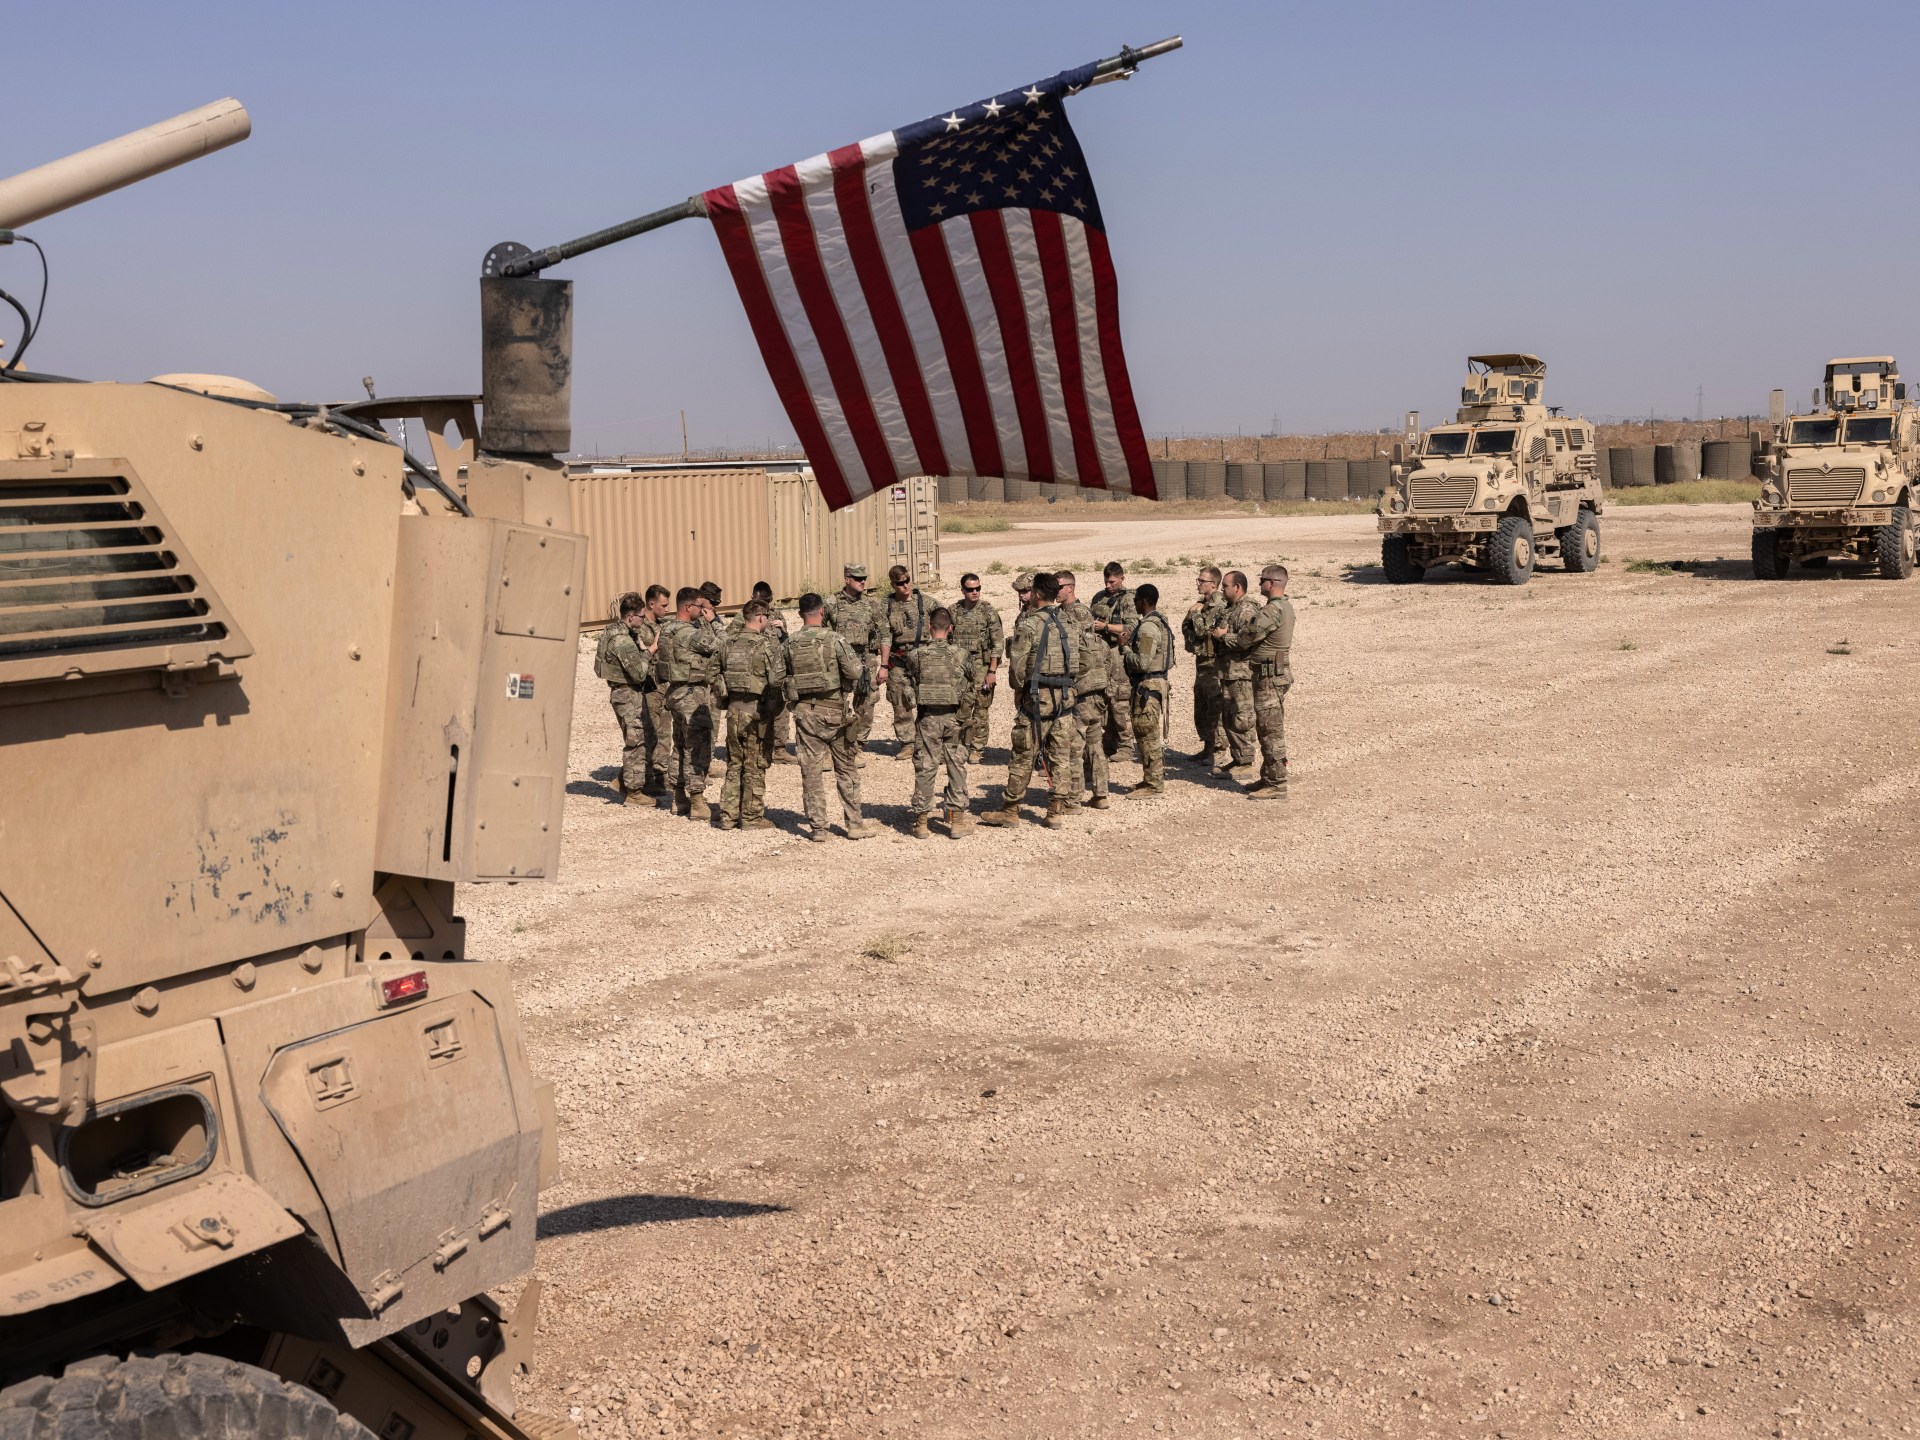 فصائل عراقية تعلن استهداف قاعدتين أميركيتين في سوريا | أخبار – البوكس نيوز